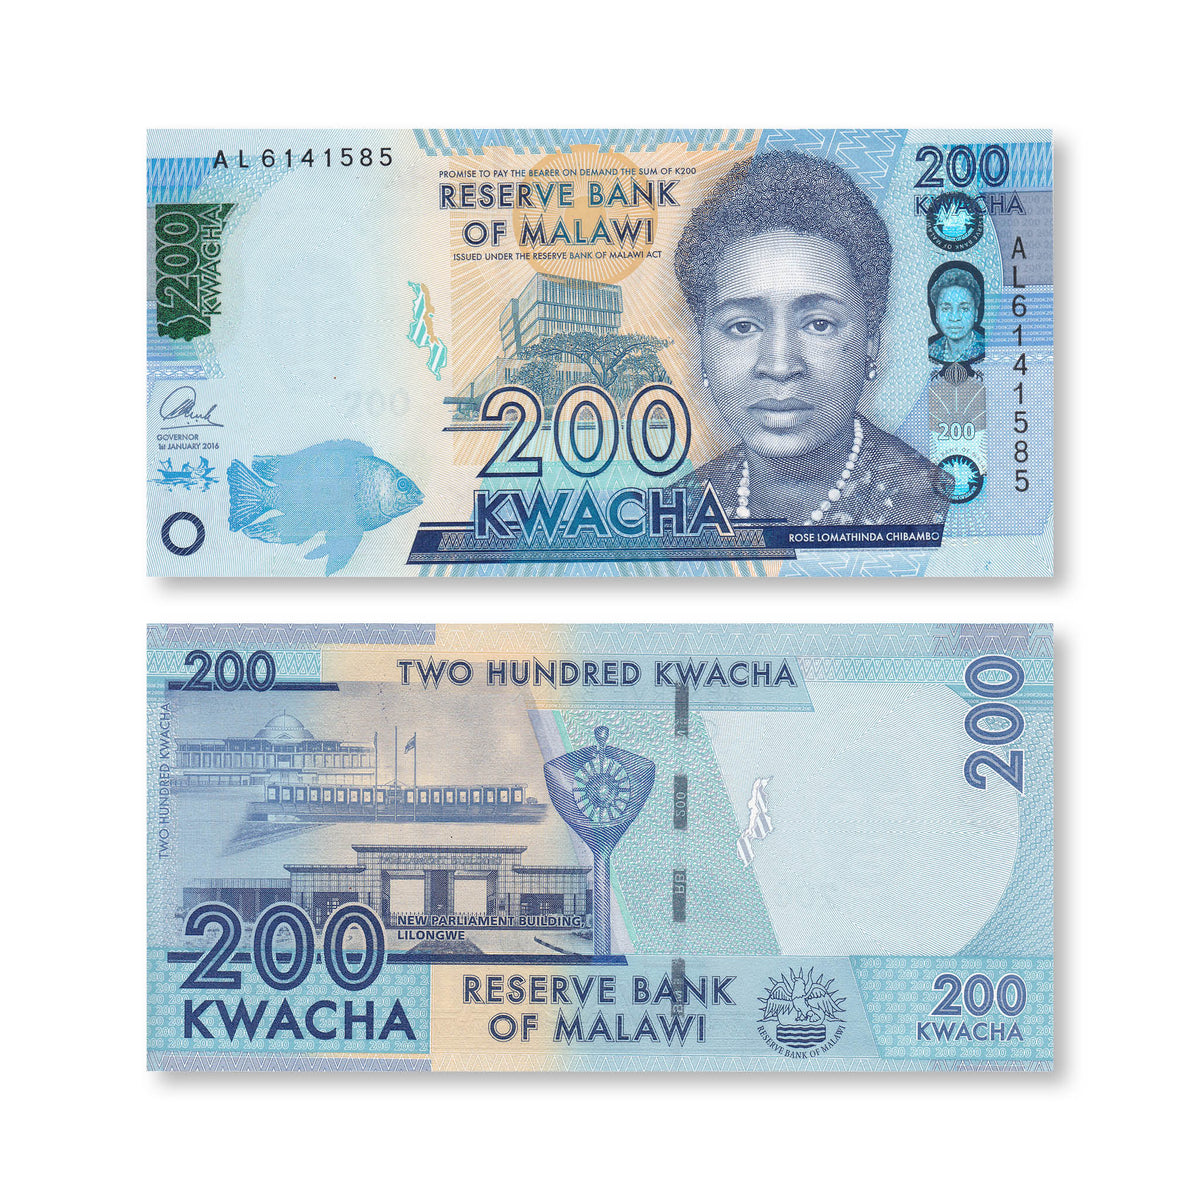 Malawi 200 Kwacha, 2016, B160a, P60c, UNC - Robert's World Money - World Banknotes